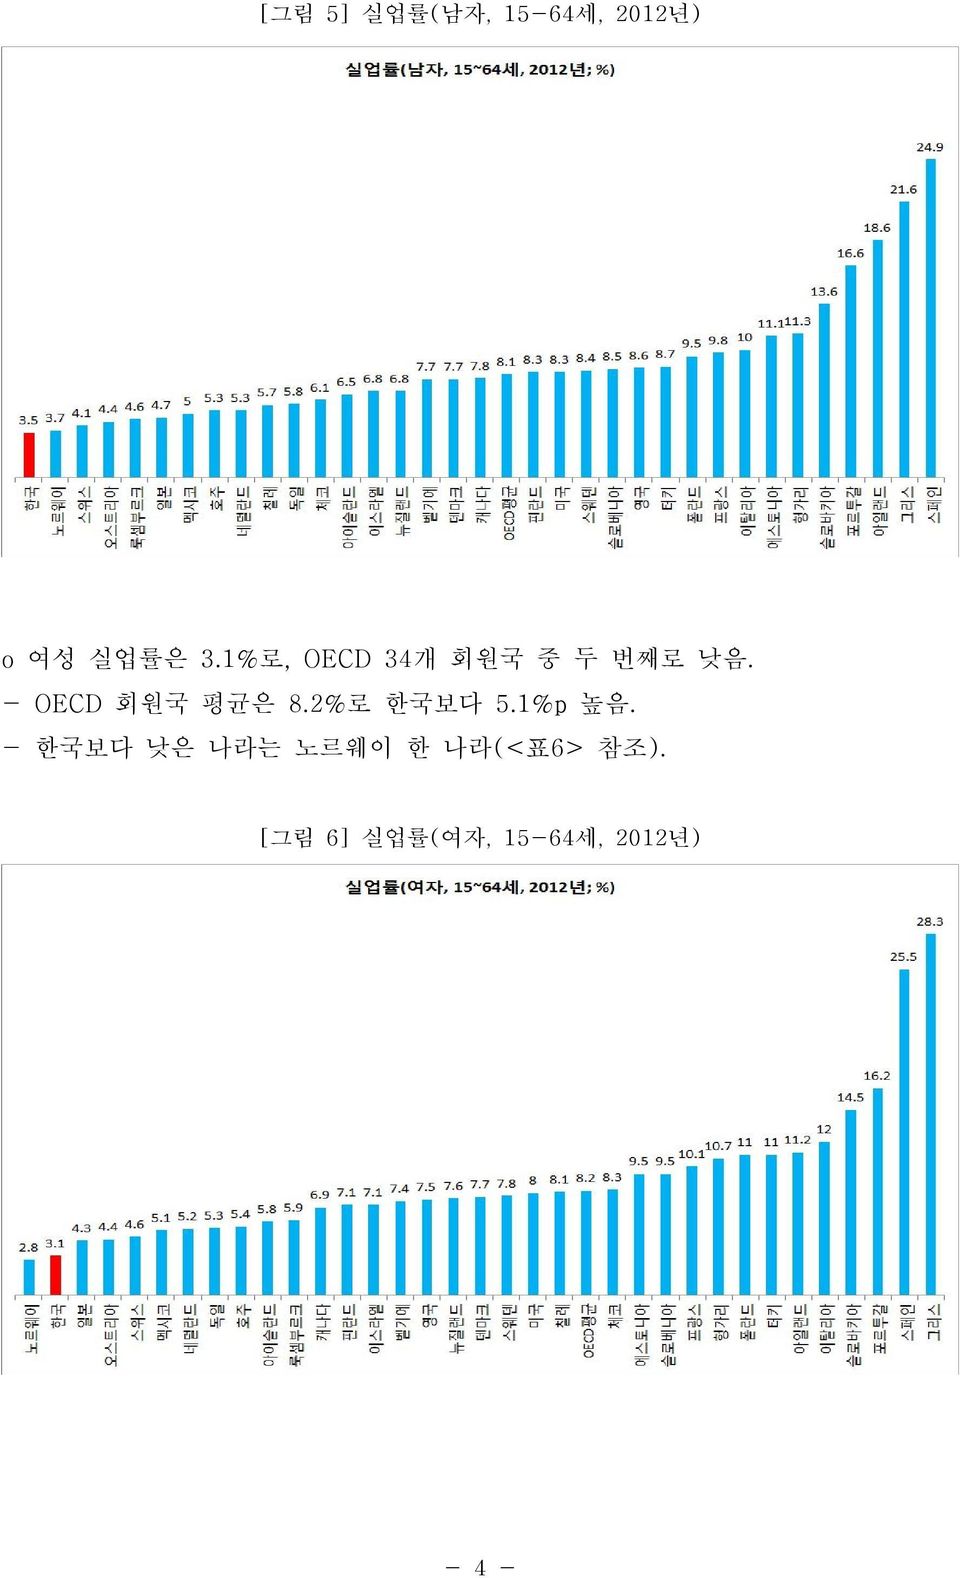 - OECD 회원국 평균은 8.2%로 한국보다 5.1%p 높음.